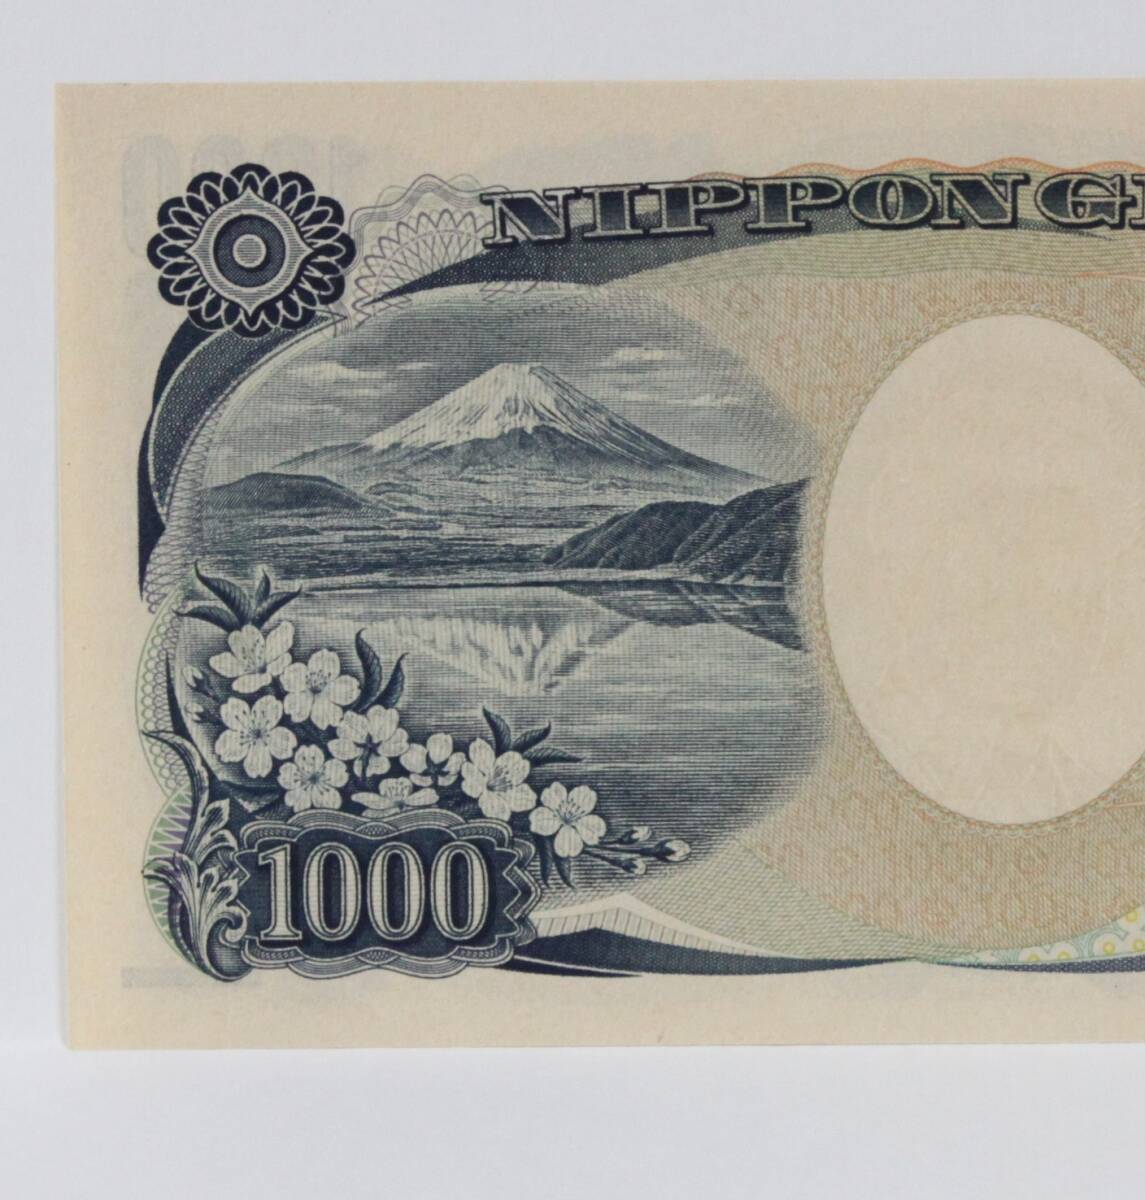  Japan note. chronicle number 000001. Noguchi britain .1000 jpy note..... unused.